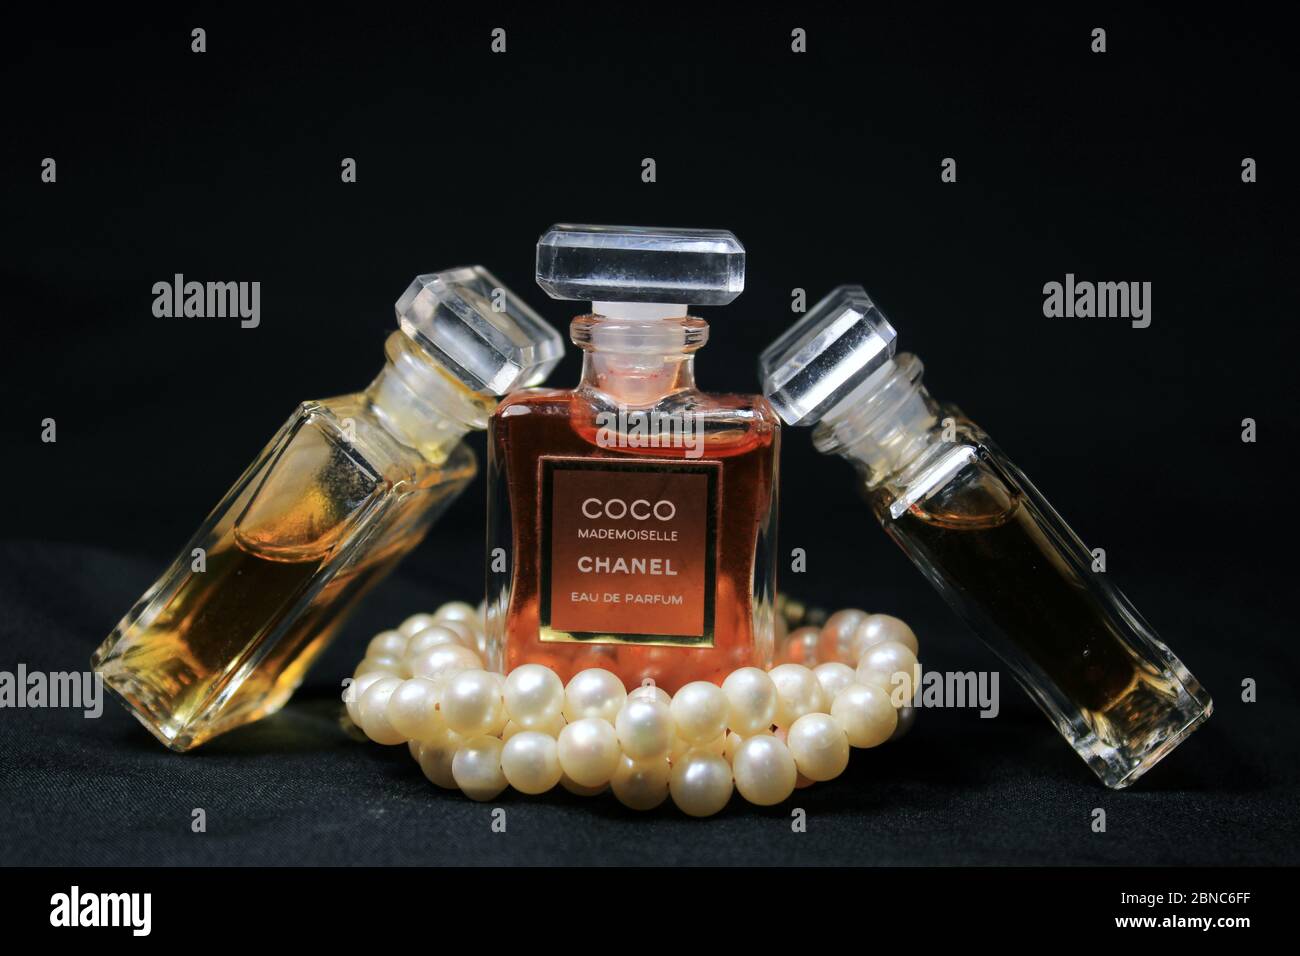 Paris, France le 13 mai 2020 : flacons de parfum Chanel isolés sur fond noir. Flacons avec différents produits de parfum Chanel. Banque D'Images